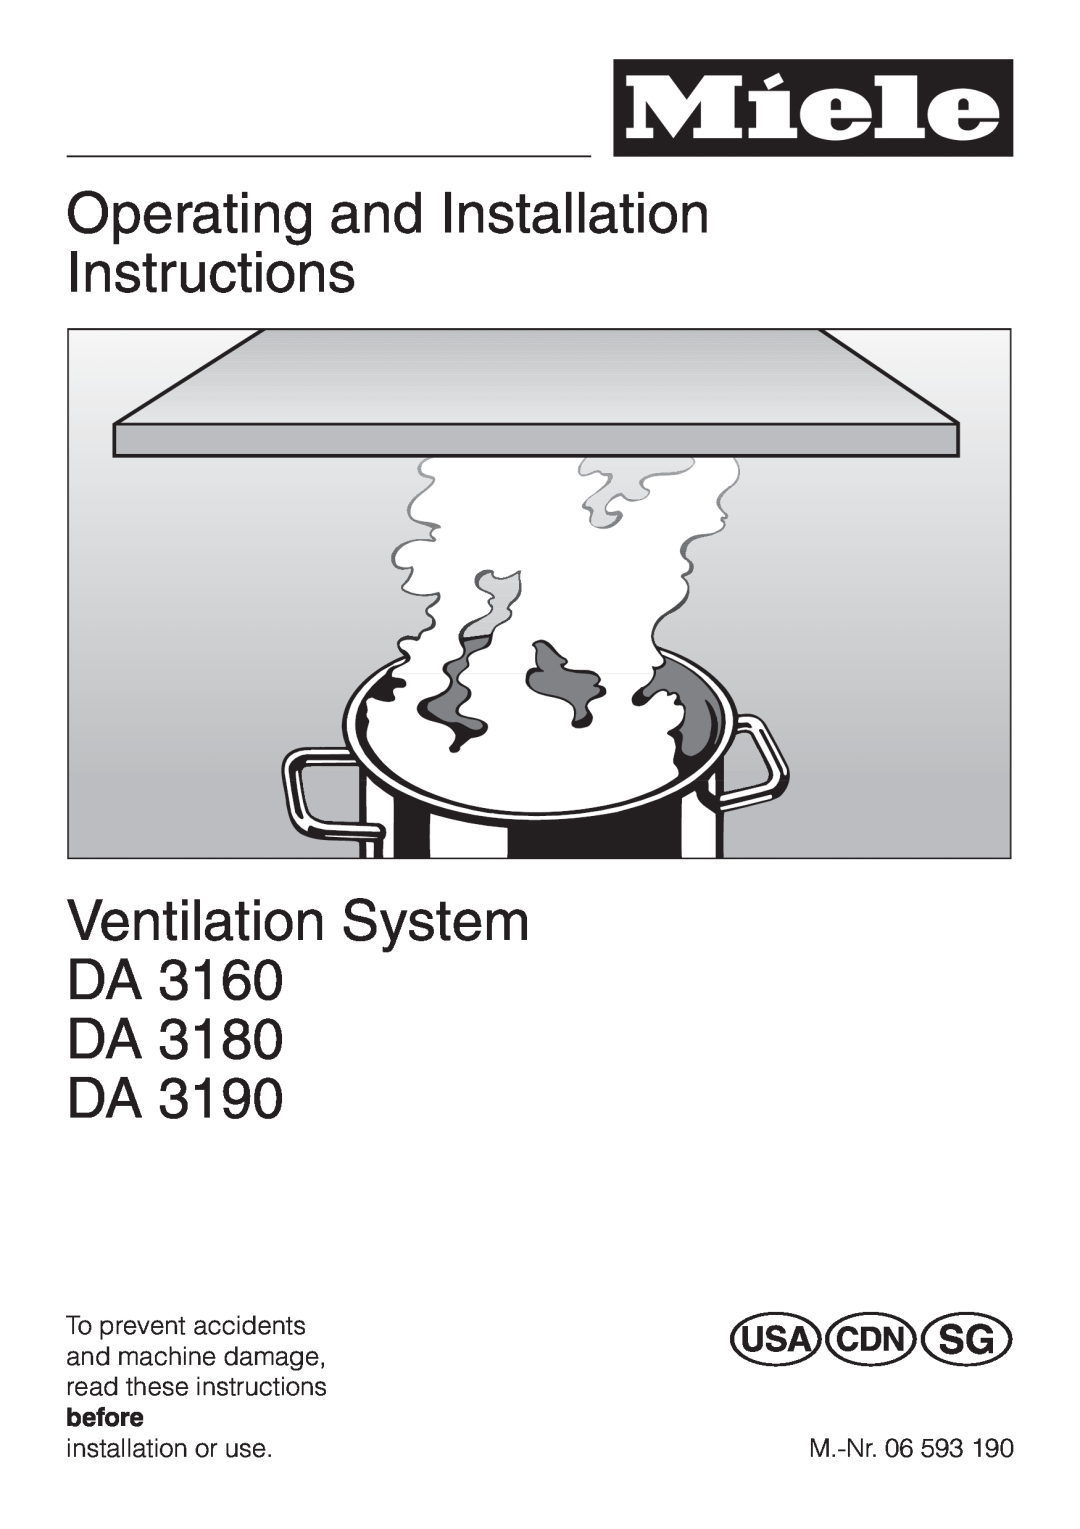 Miele DA3190, DA 3180 installation instructions Operating and Installation Instructions, Ventilation System DA DA DA 